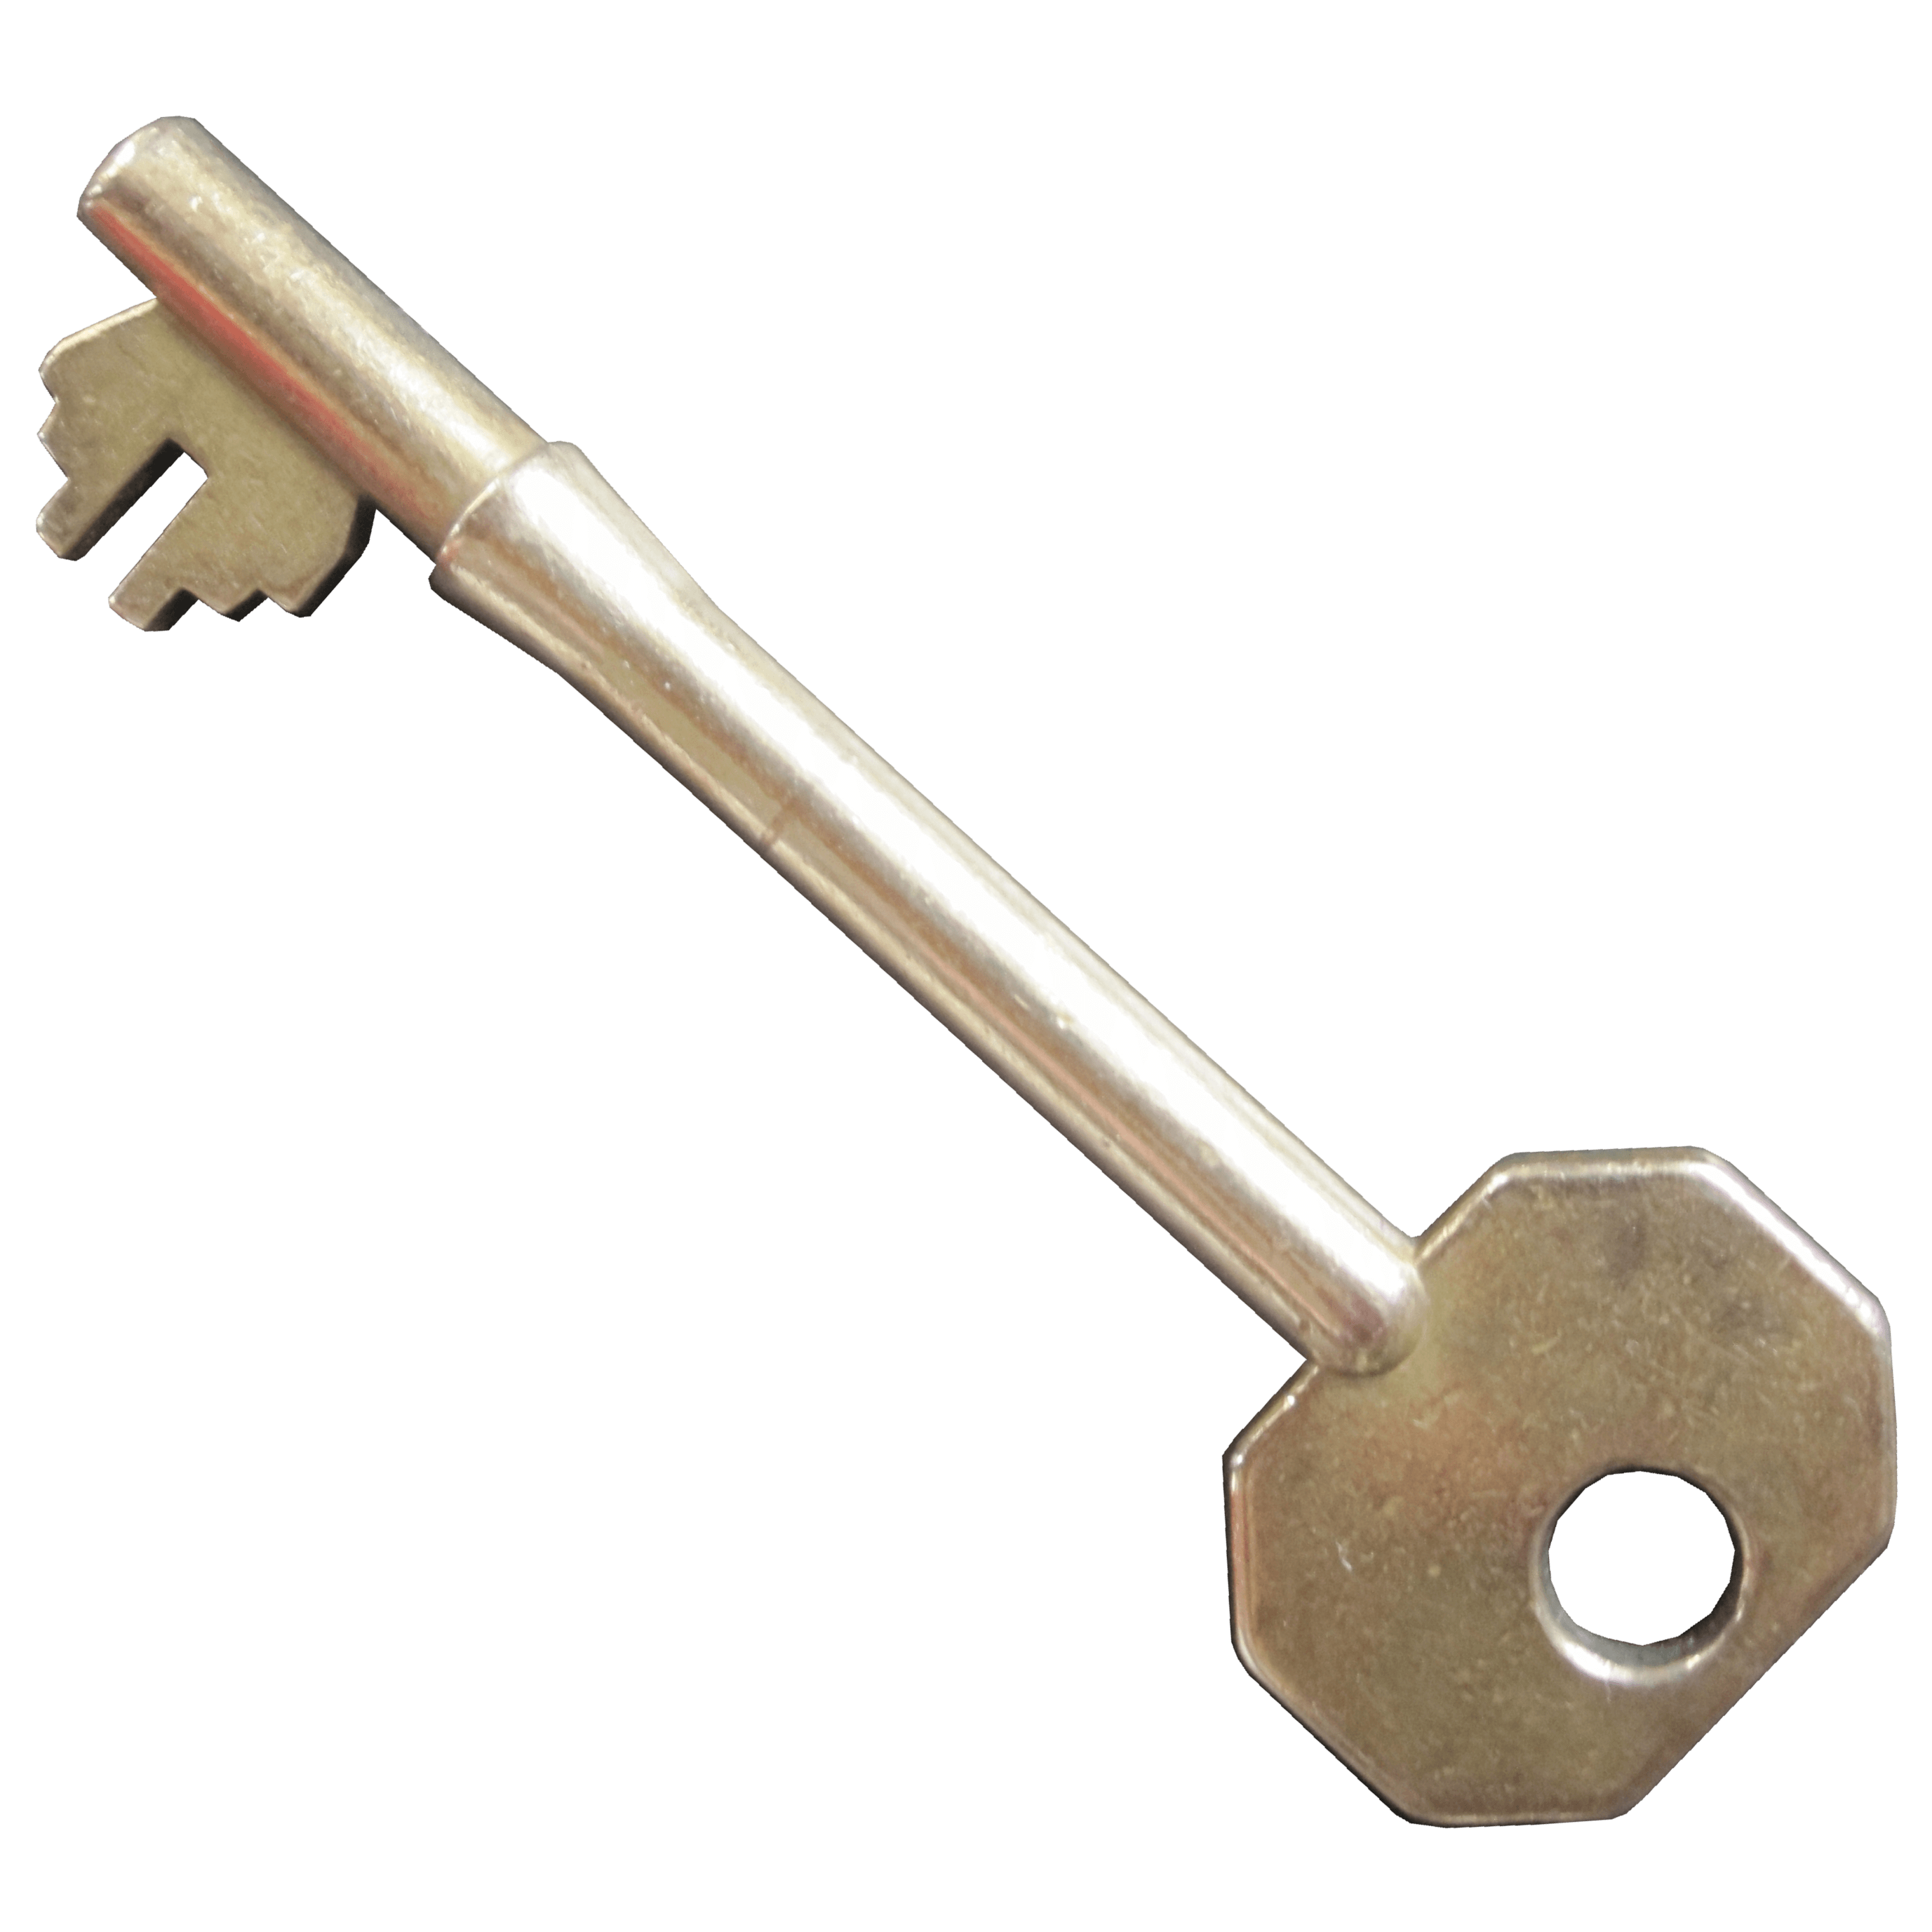 Single old key transparent. House keys png